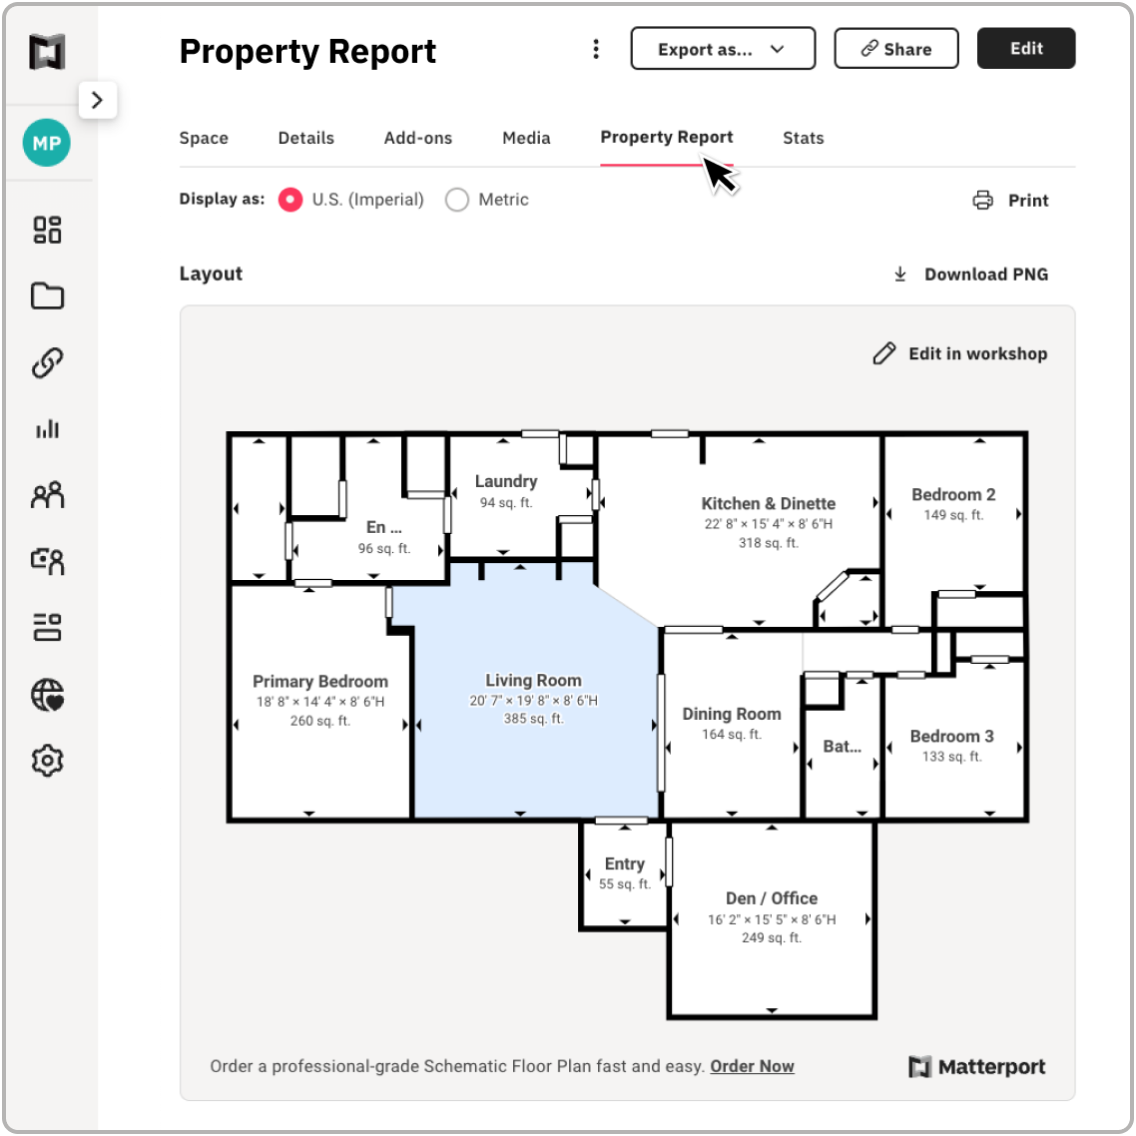 Детали отчета о собственности в модели дома Matterport